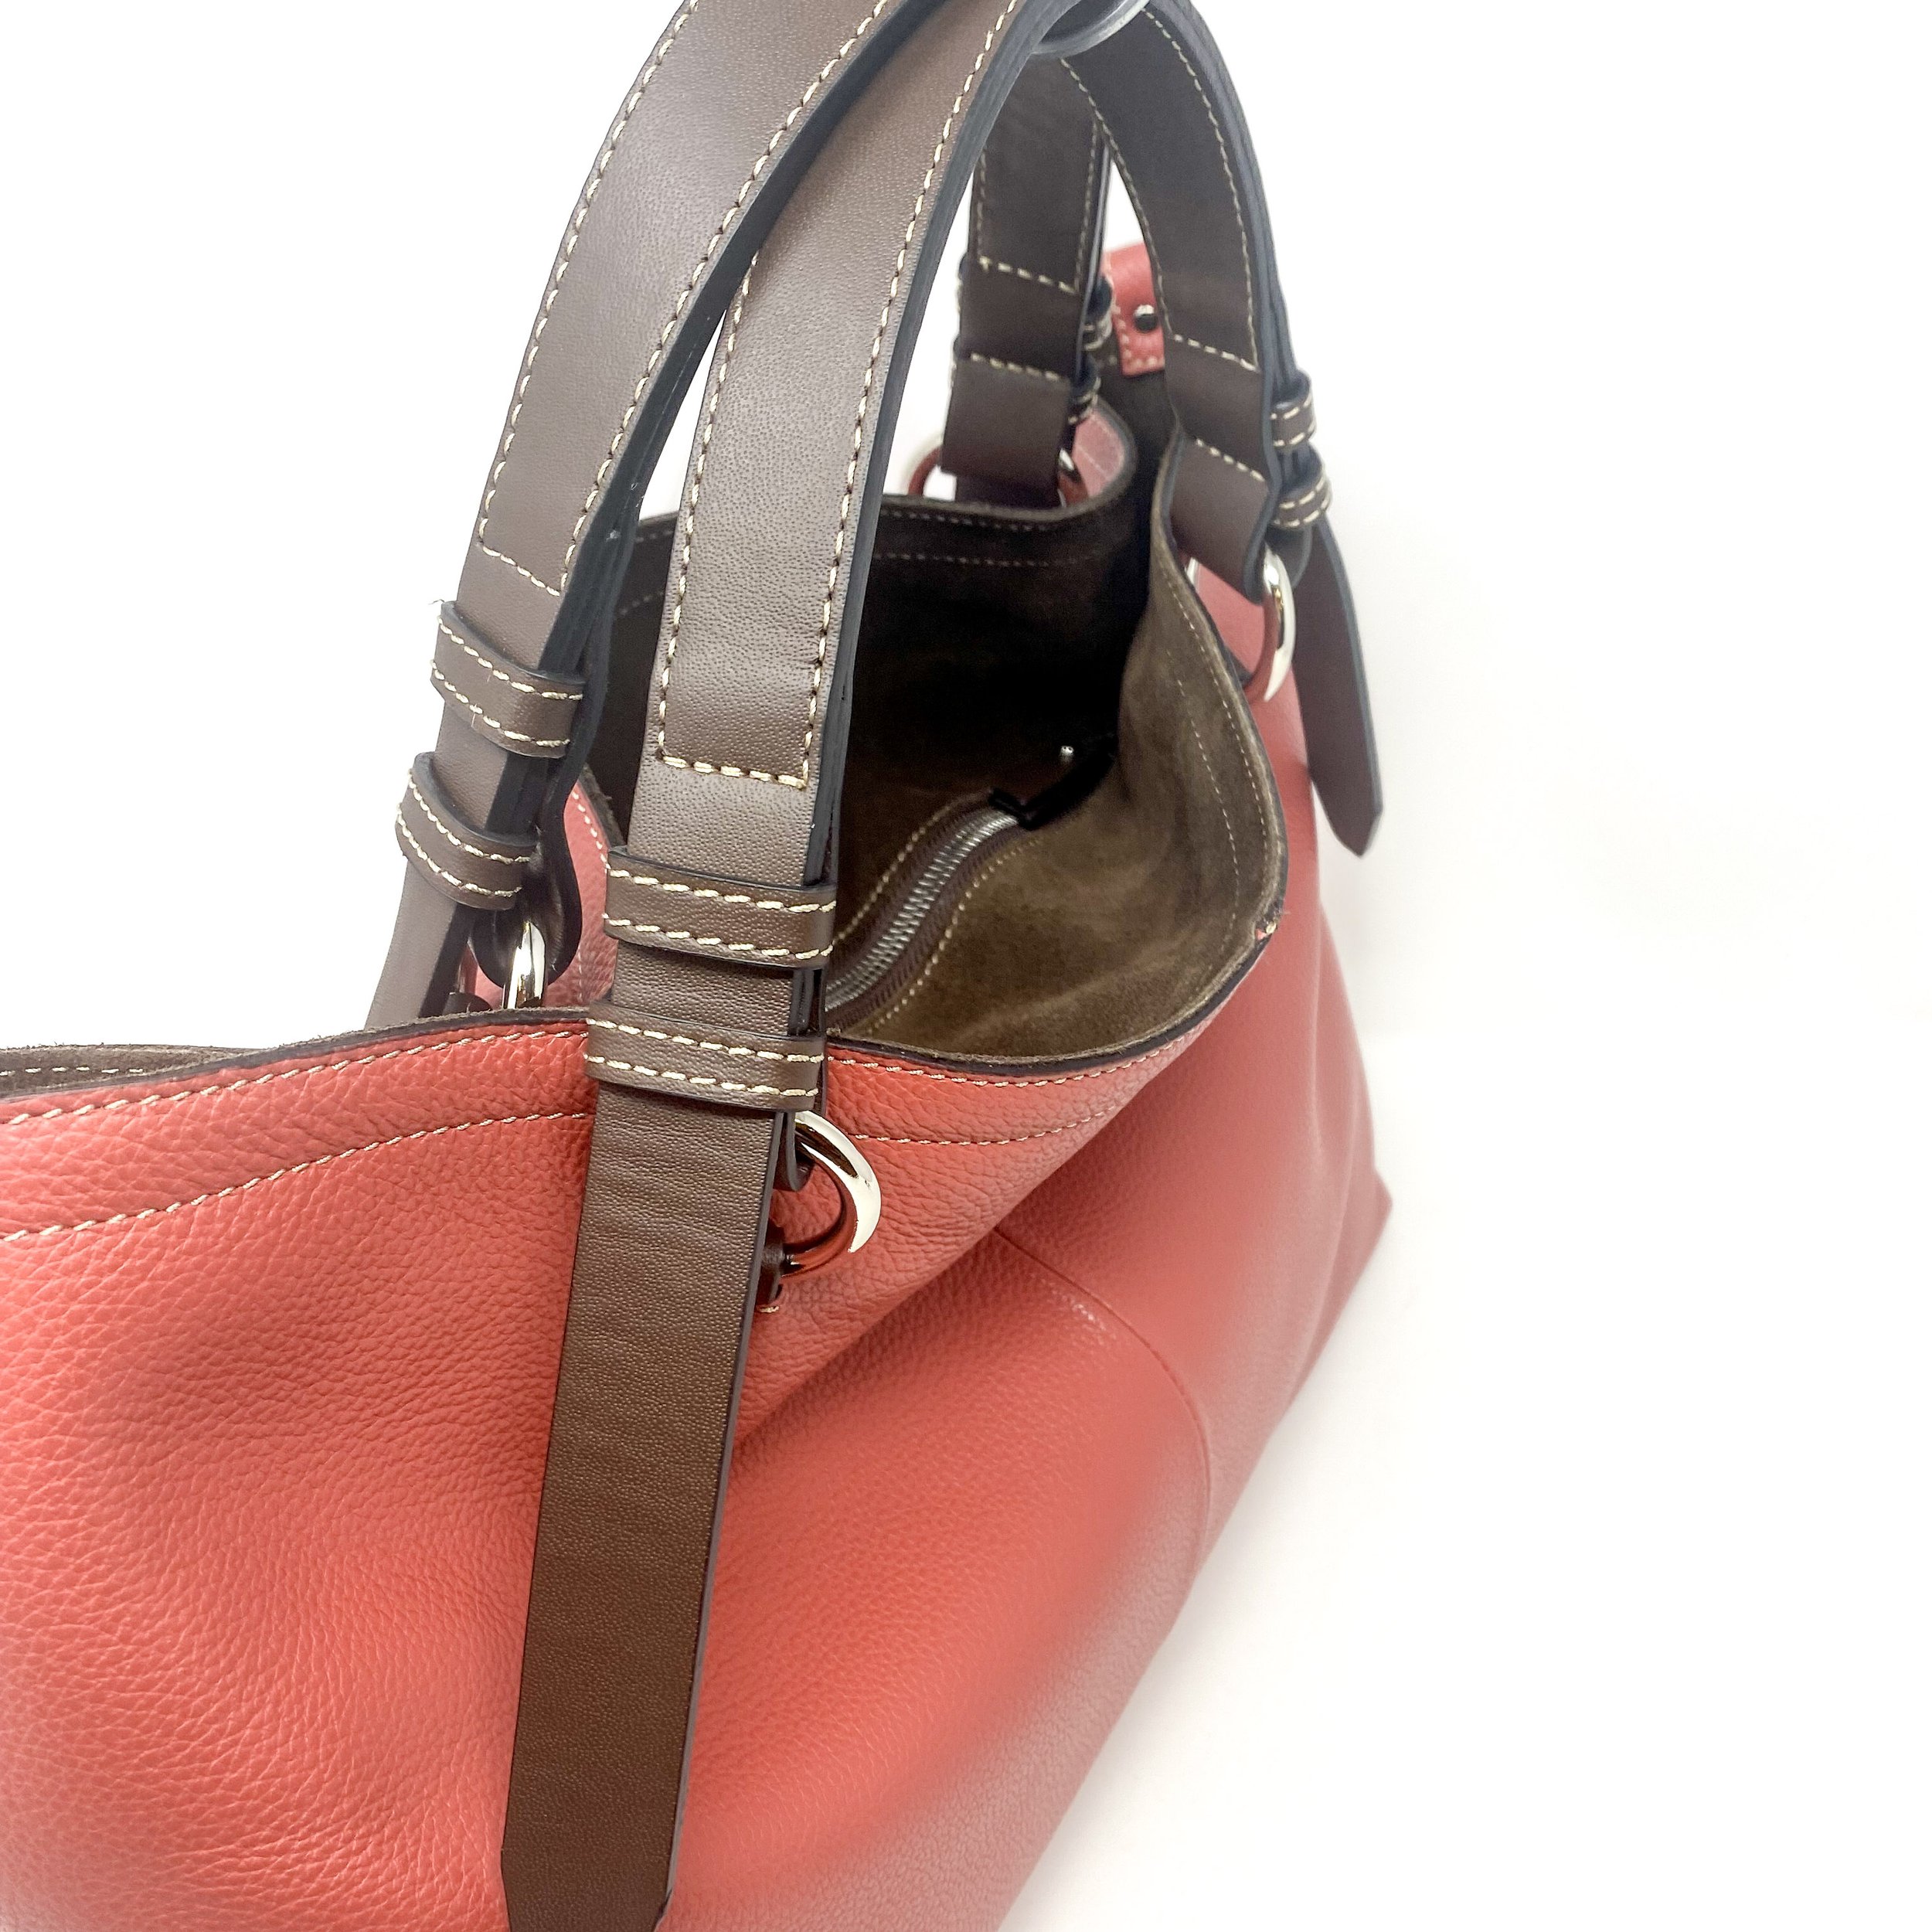 Cross Body Handbag | Clutch | Double Tassel Italian Leather Purse –  Inspired Elements Co